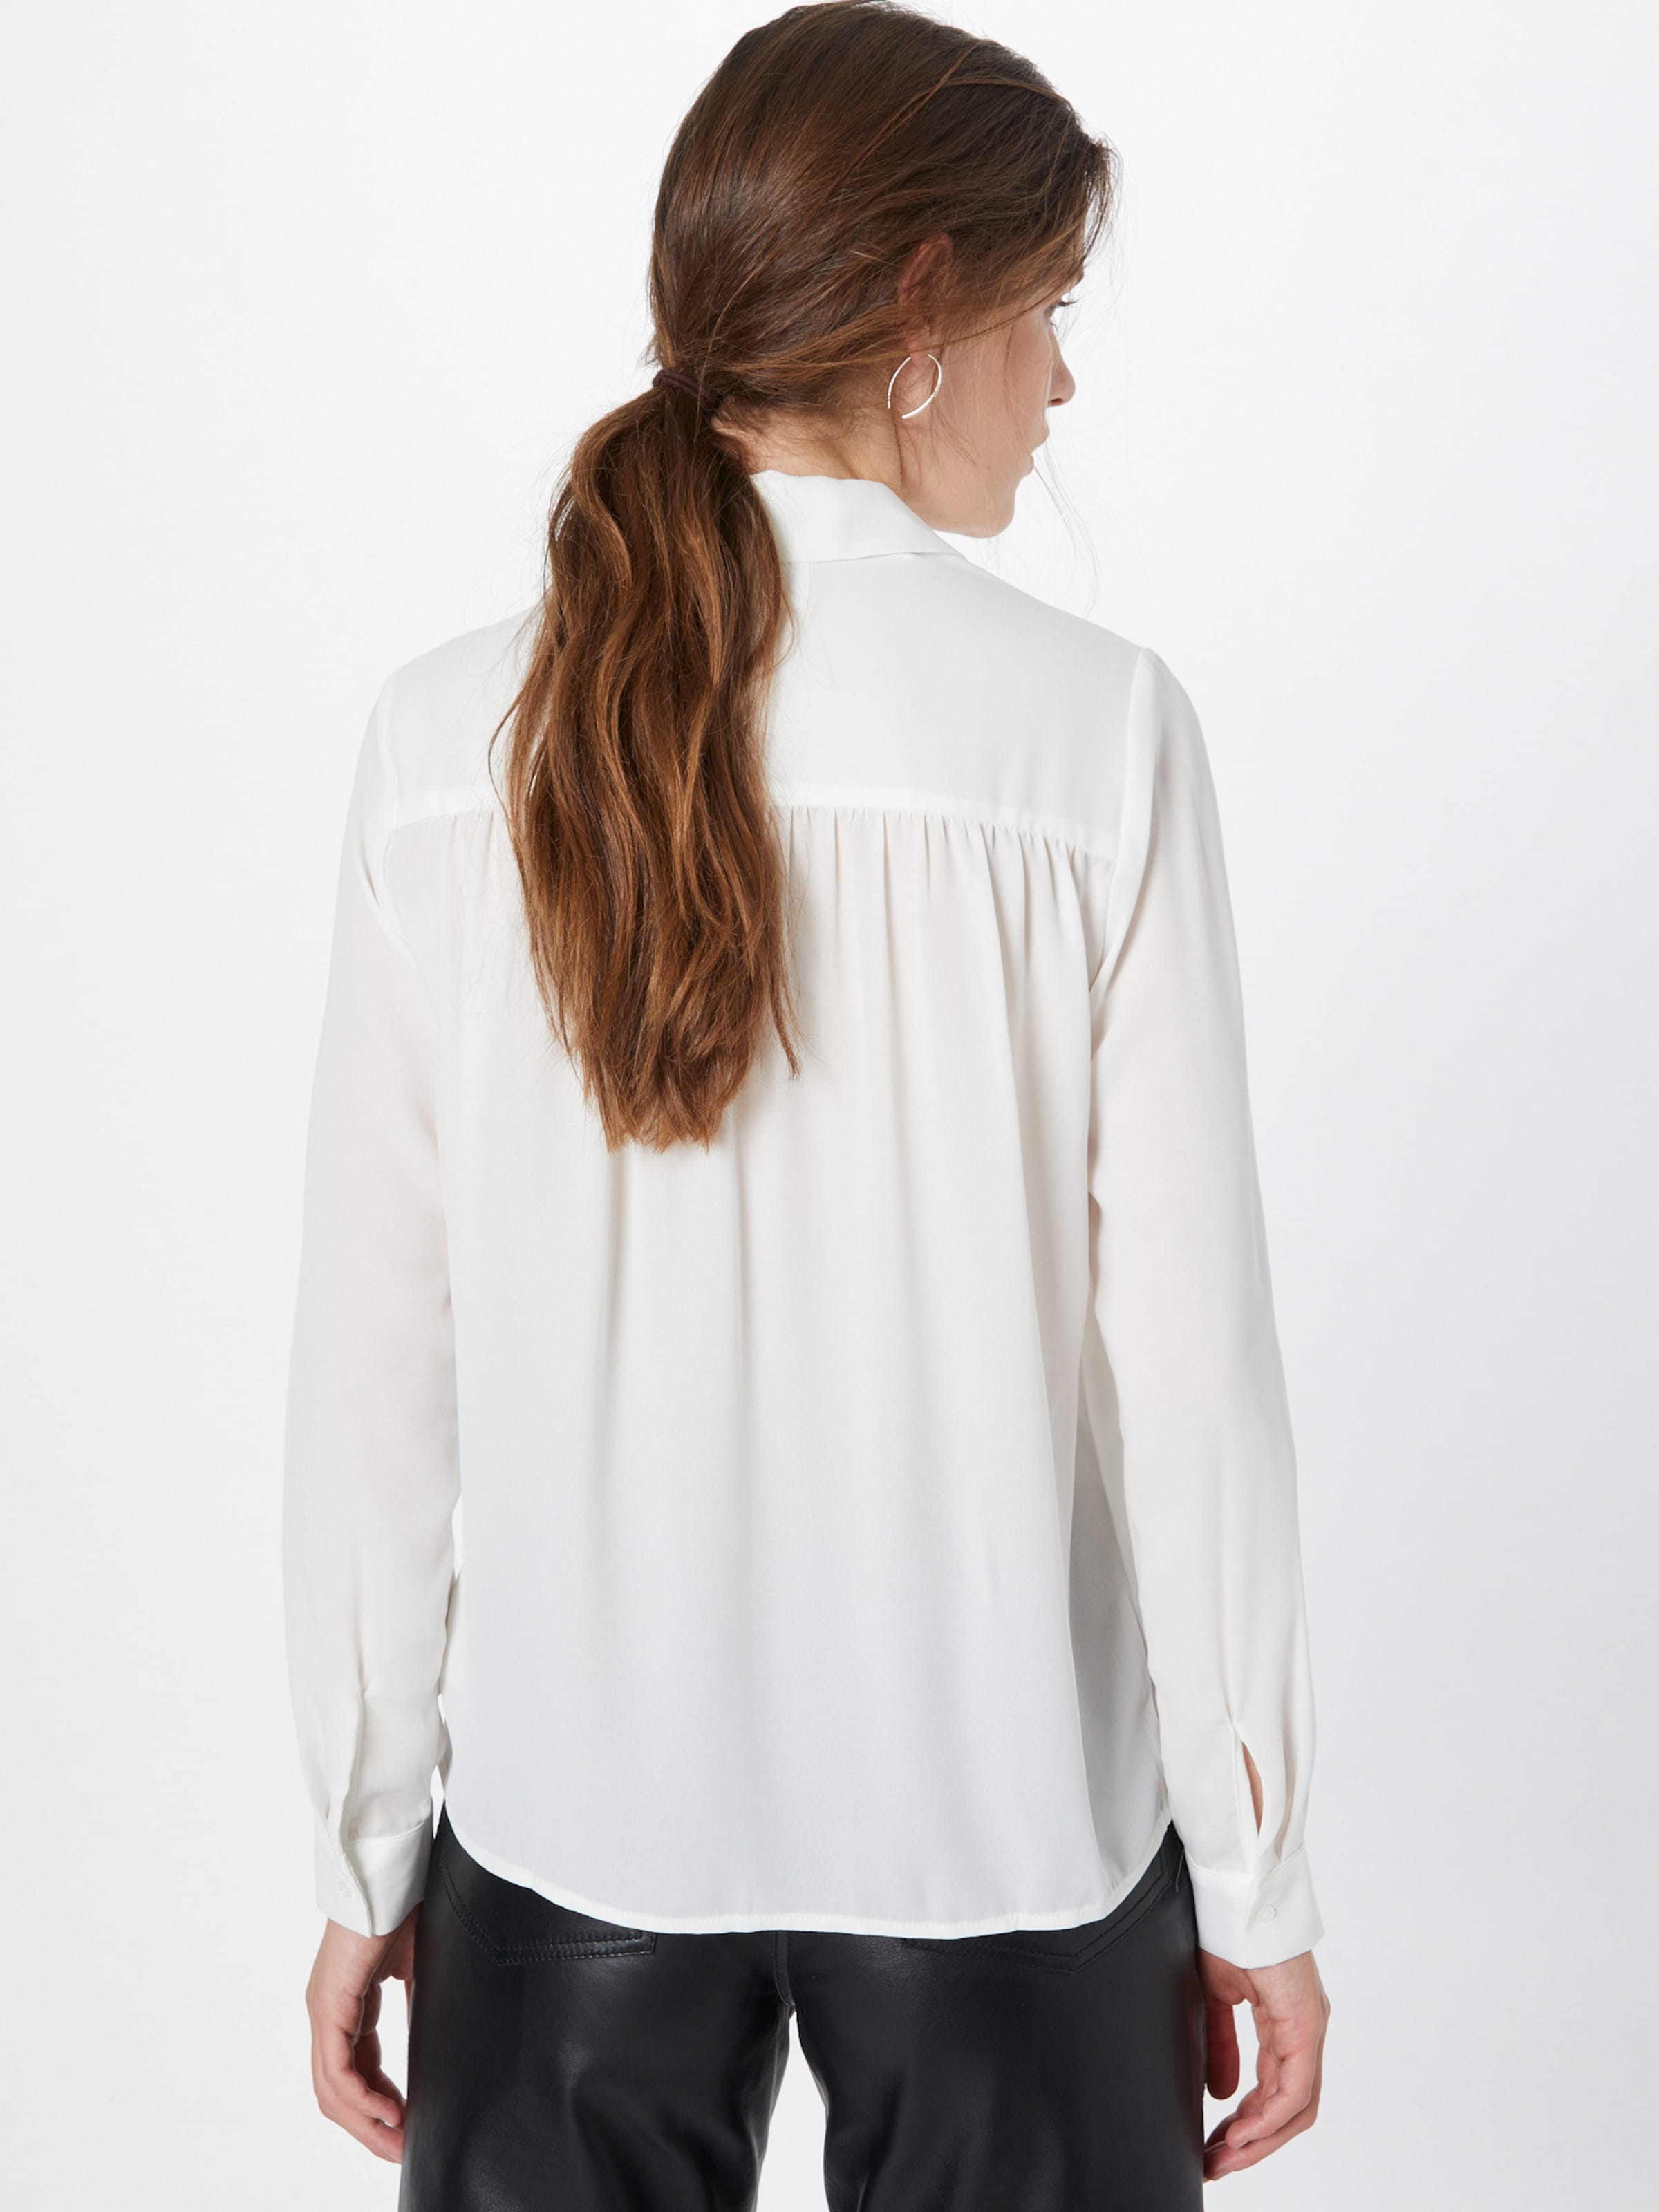 Taglie comode GRFf4 SELECTED FEMME Camicia da donna in Bianco 